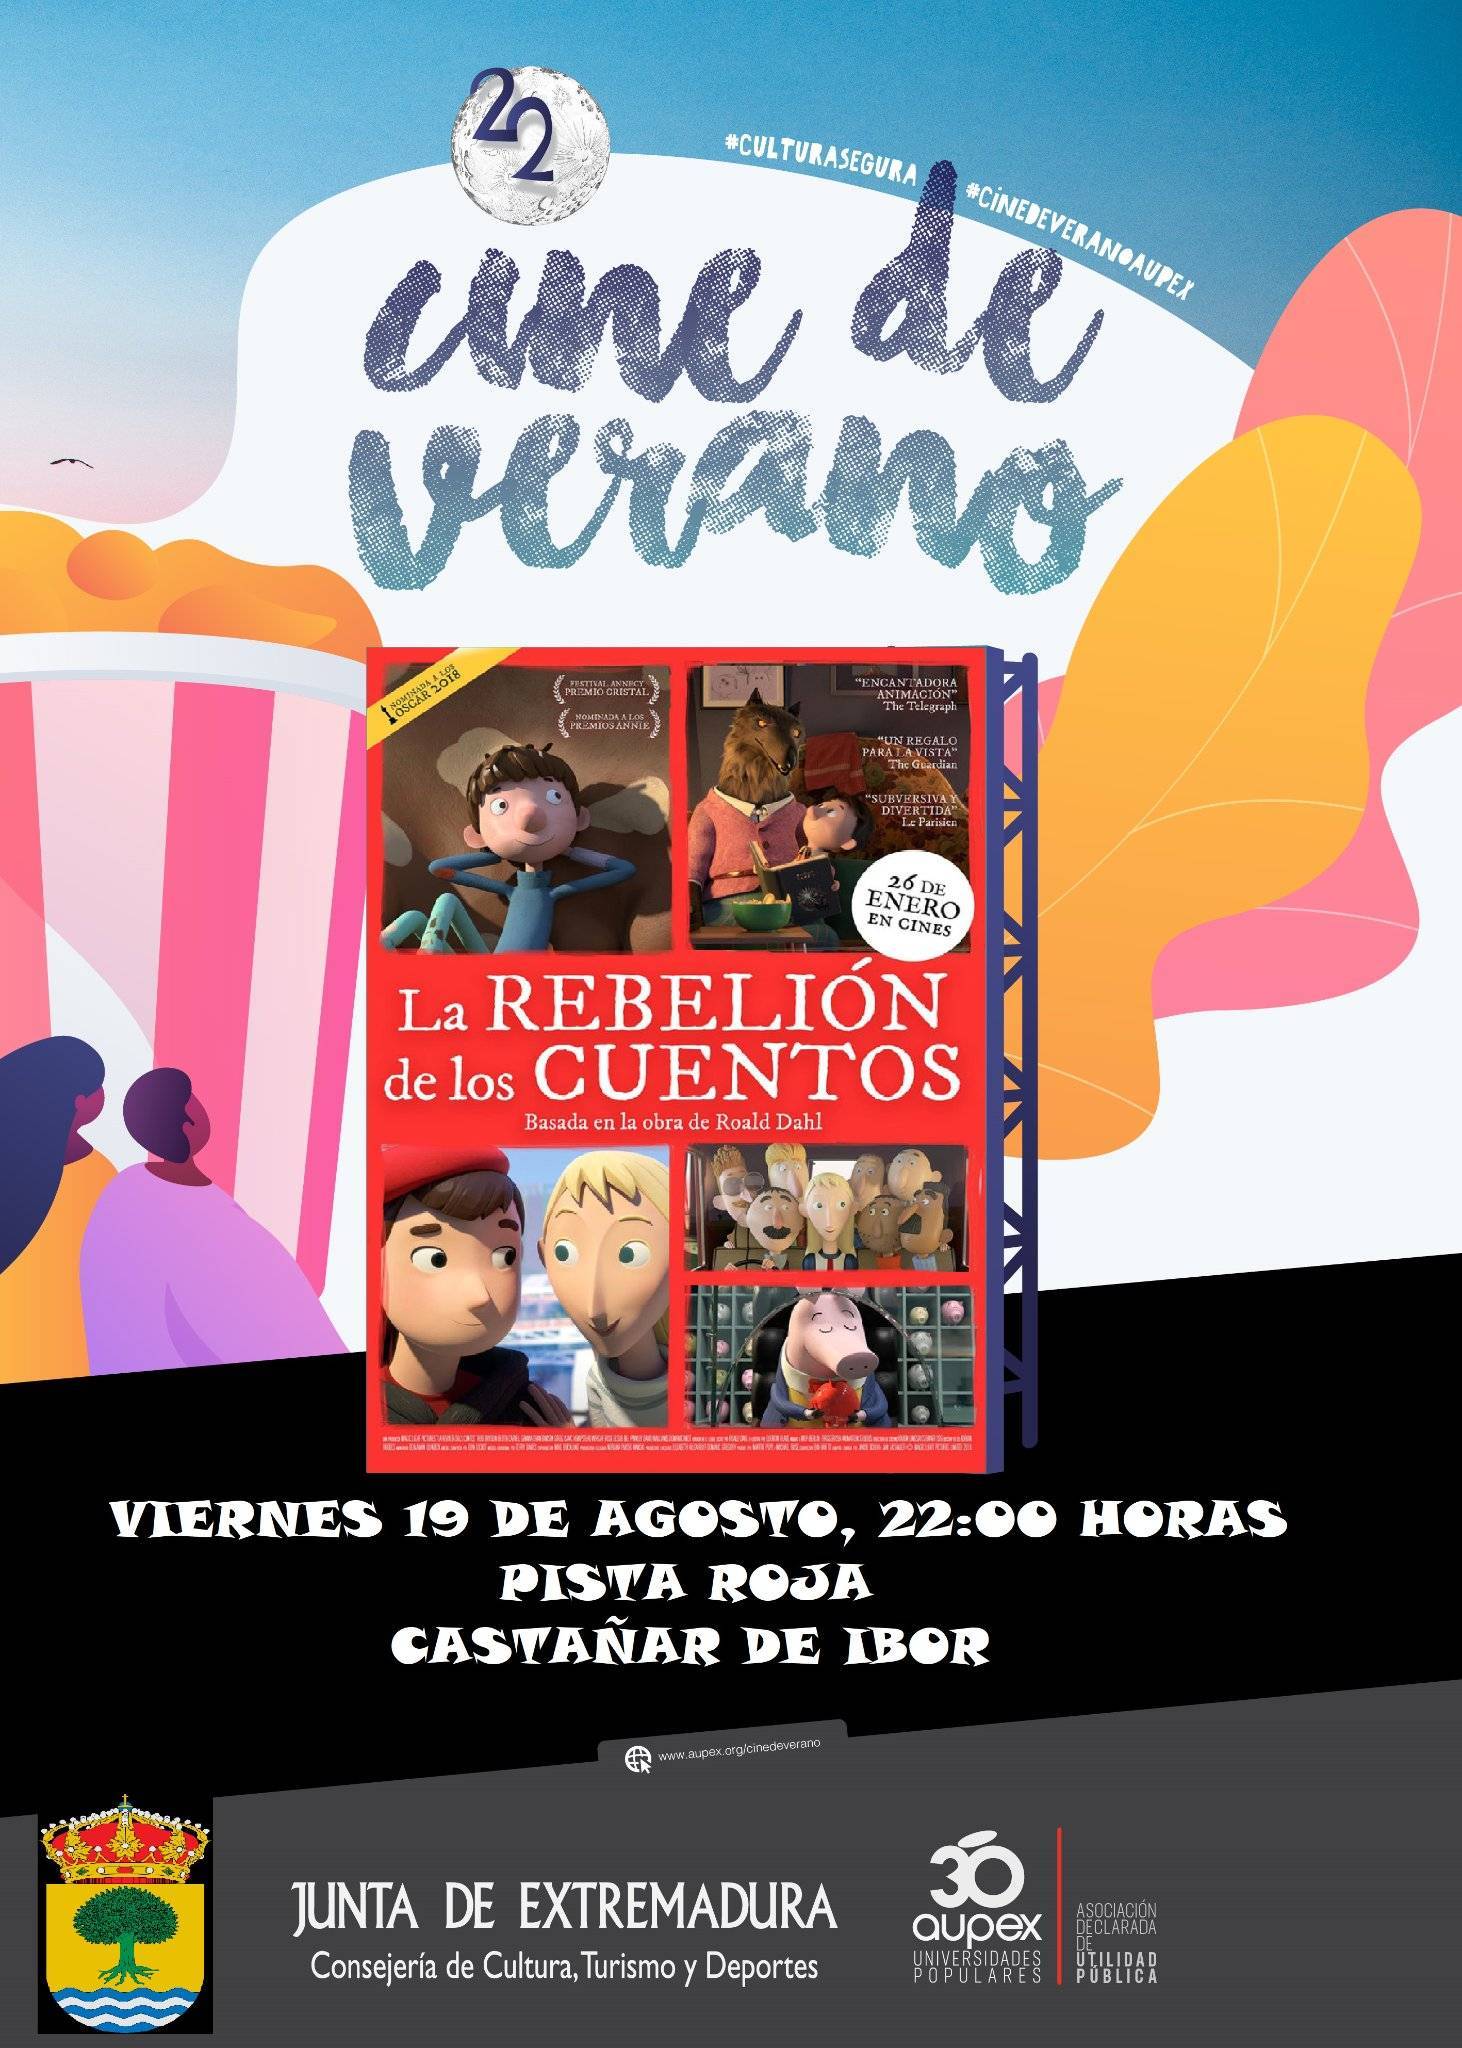 'La rebelión de los cuentos' (2022) - Castañar de Ibor (Cáceres)